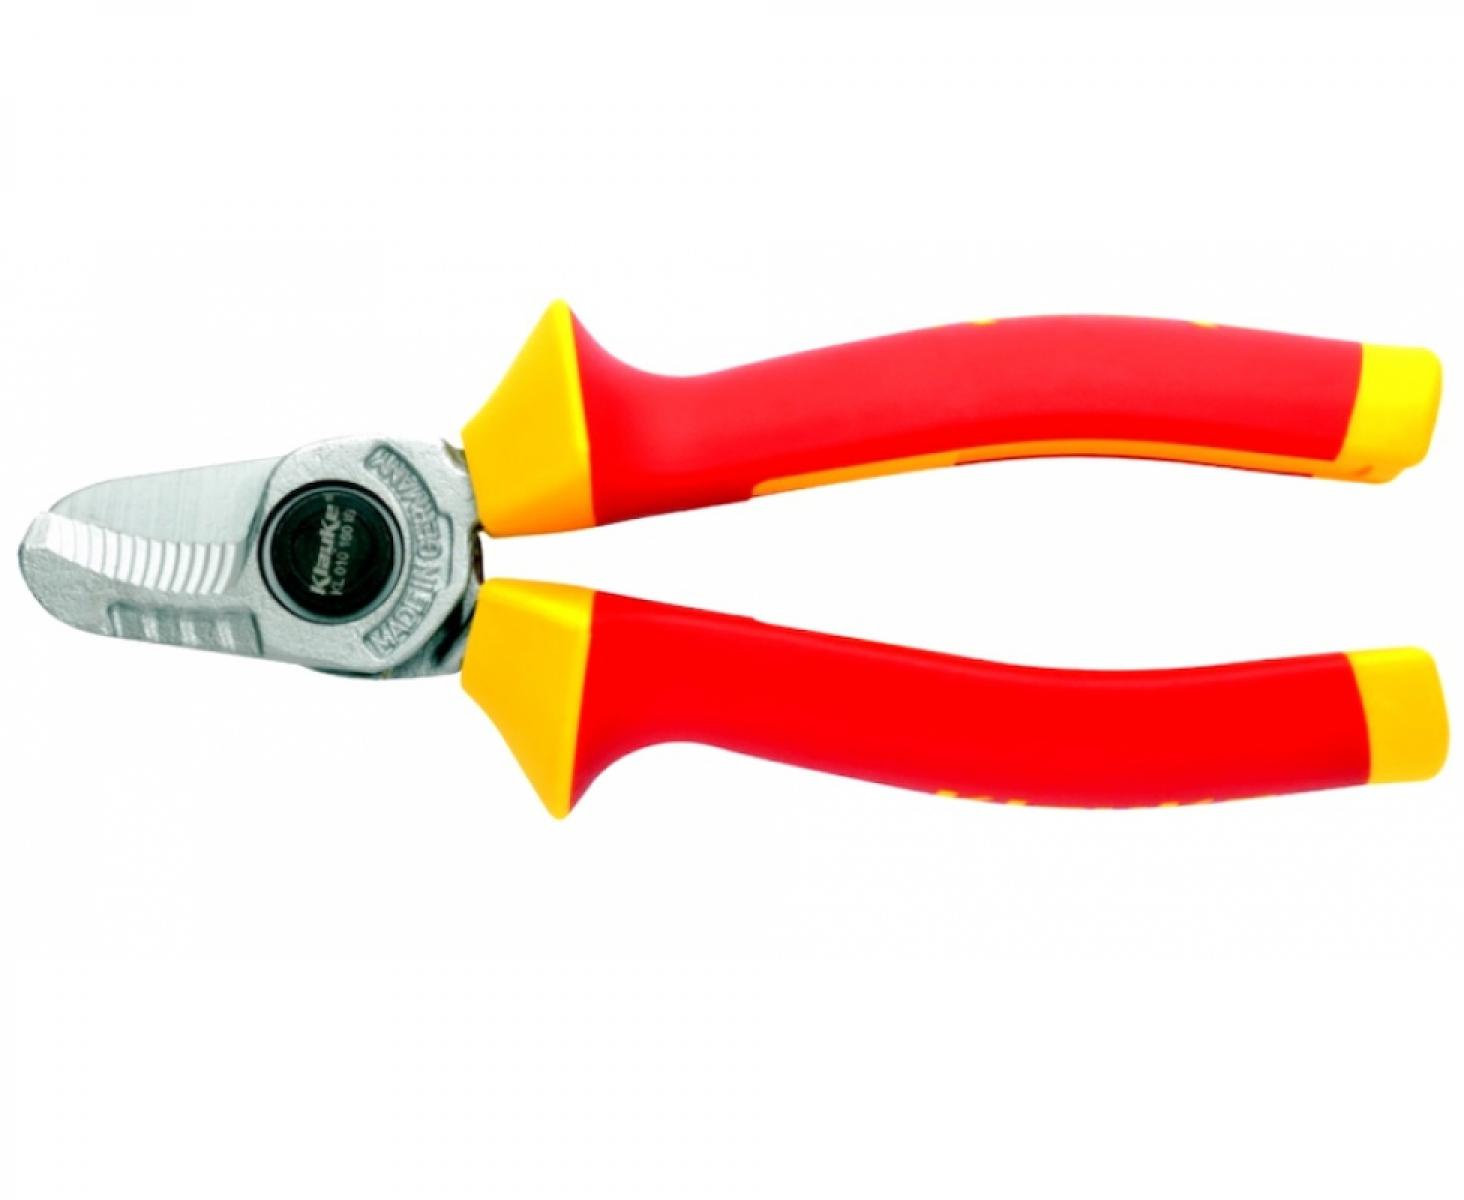 Ножницы VDE для медного и алюминиевого кабеля NYM и NYY Ø 16 мм сечением 50 мм² Klauke KLKKL010160IS